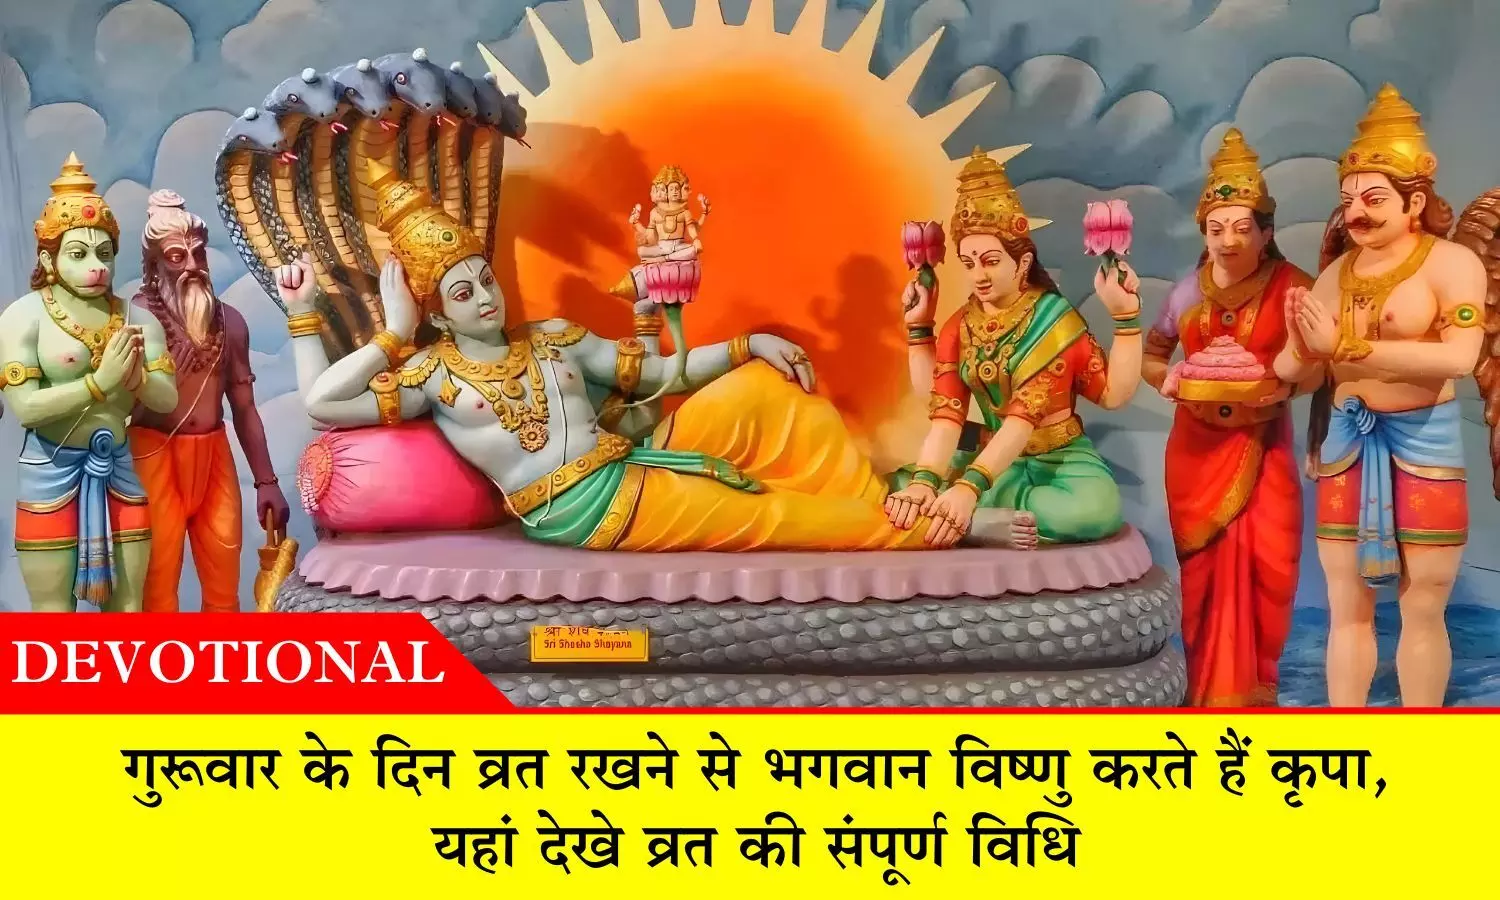 Guruvar Vrat: गुरूवार के दिन व्रत रखने से भगवान विष्‍णु करते हैं कृपा, यहां देखे व्रत की संपूर्ण विधि